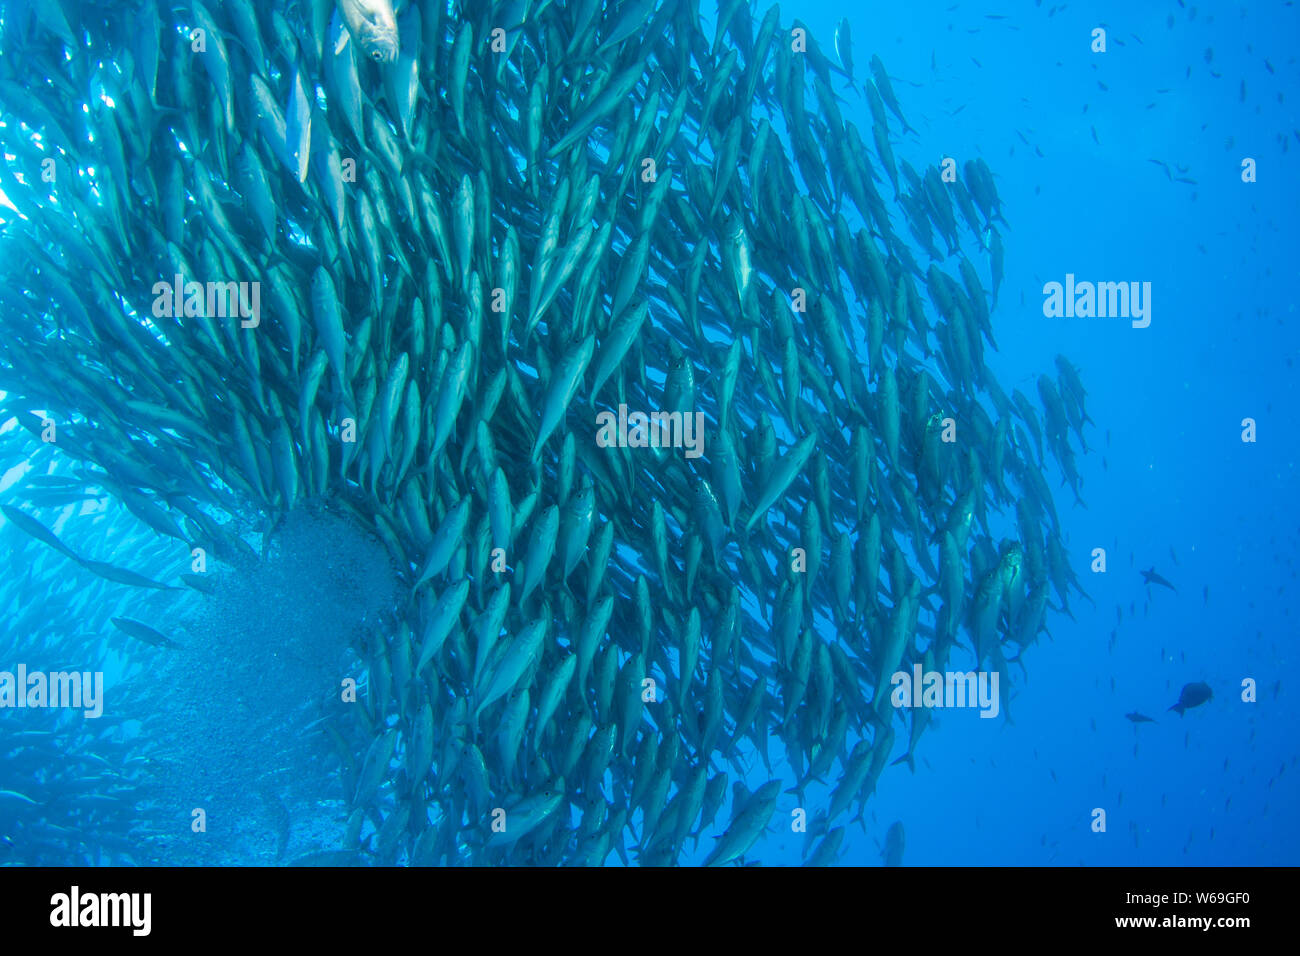 Konzept Bild der Überfischung und Erschöpfung der Fischbestände in den Ozeanen Stockfoto